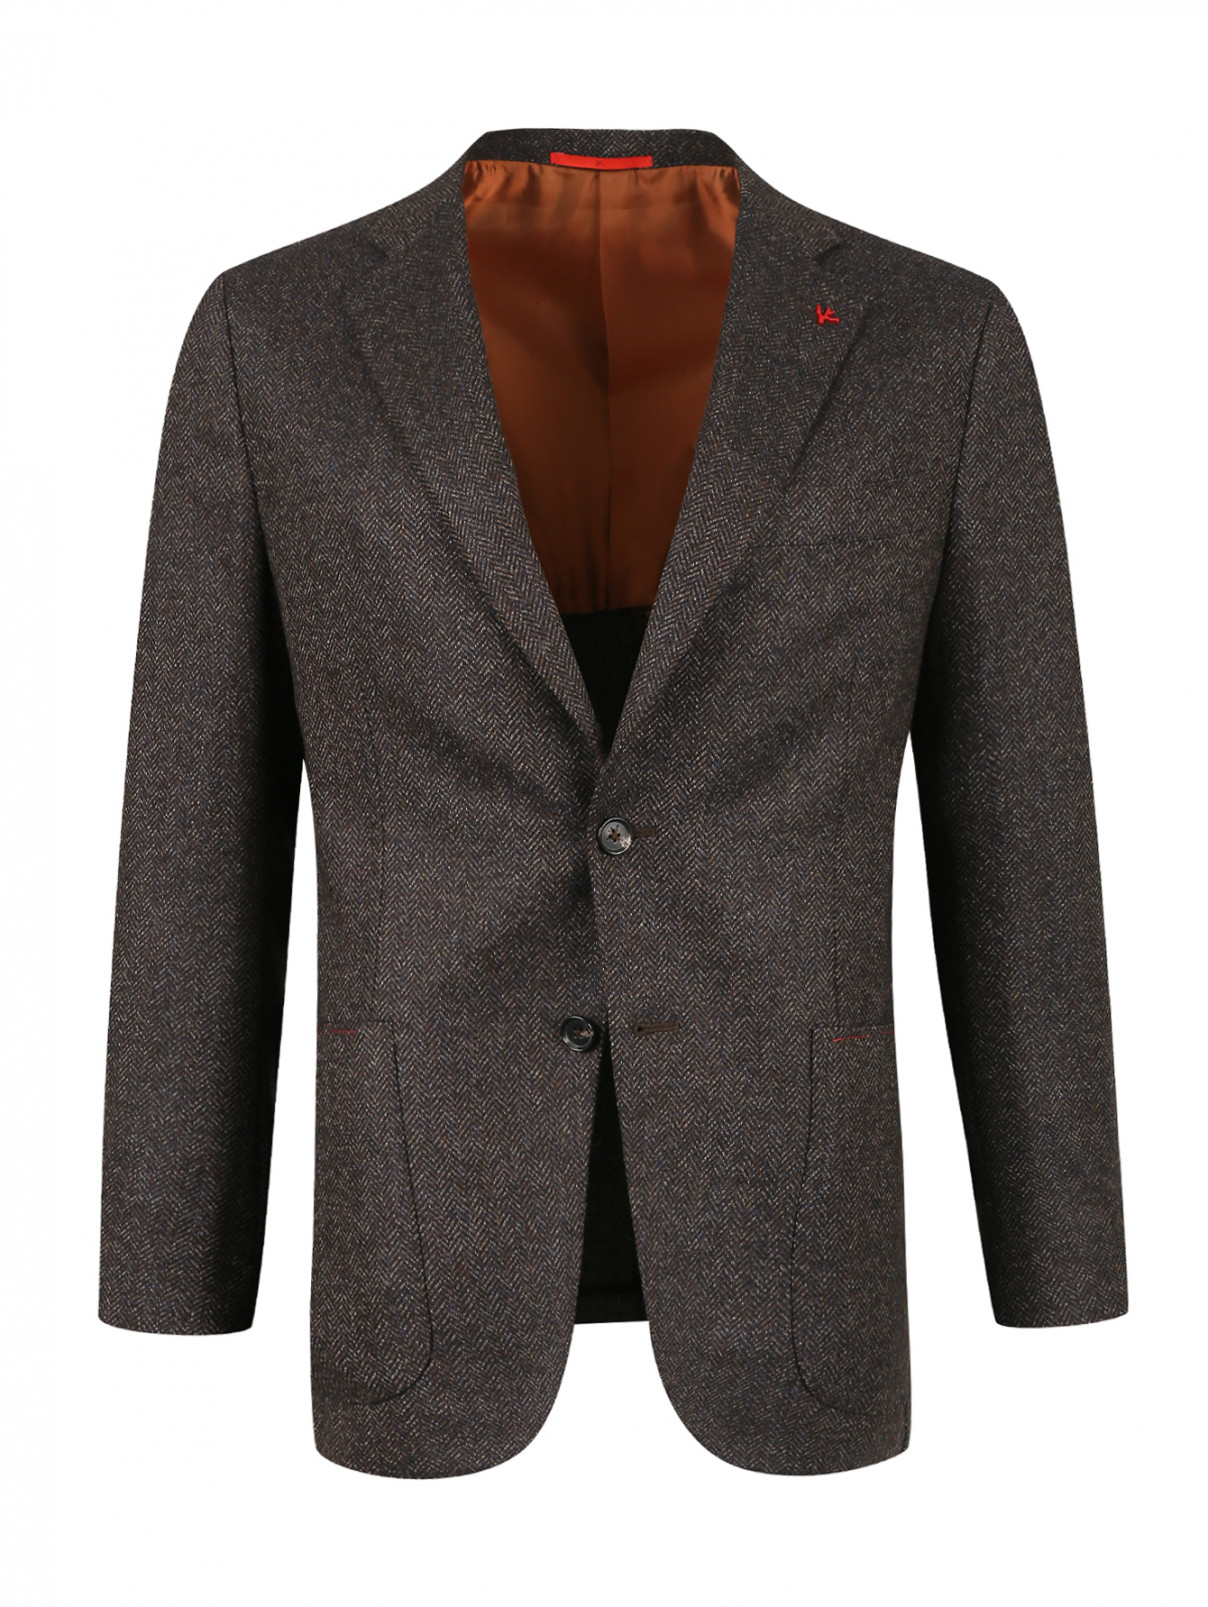 Пиджак из шерсти с узором Isaia  –  Общий вид  – Цвет:  Коричневый